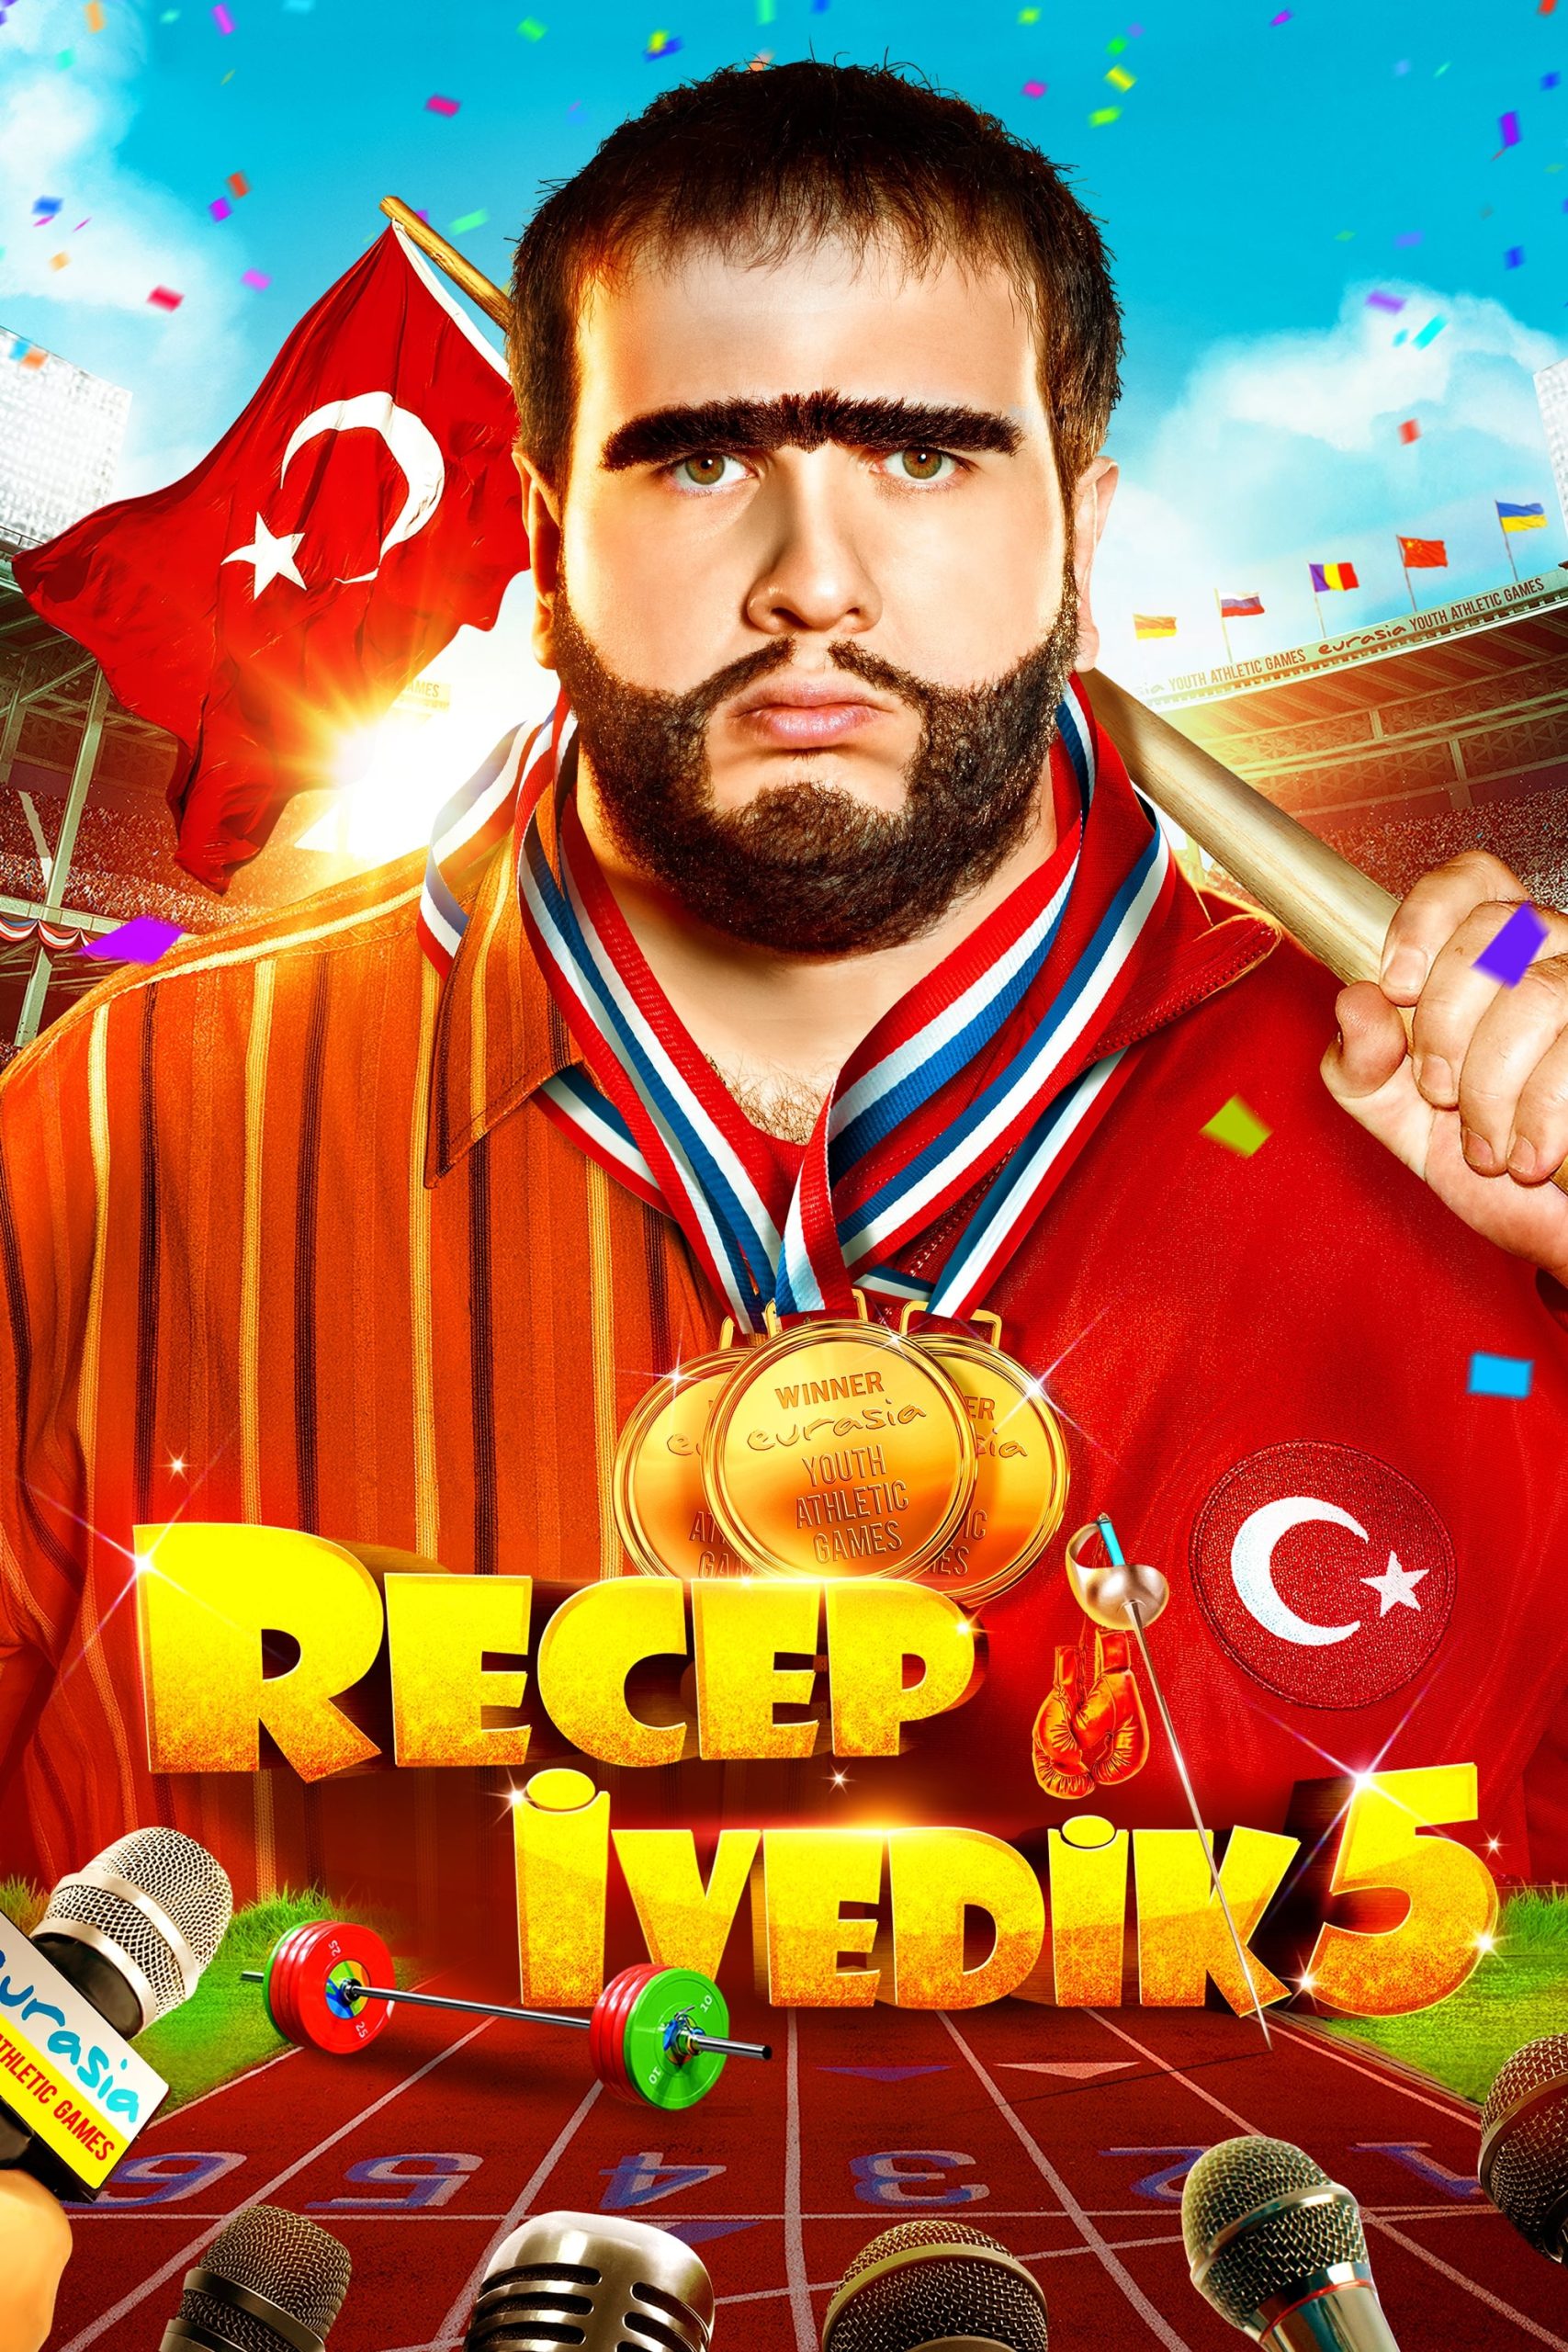 دانلود فیلم Recep Ivedik 5 2017 با دوبله فارسی